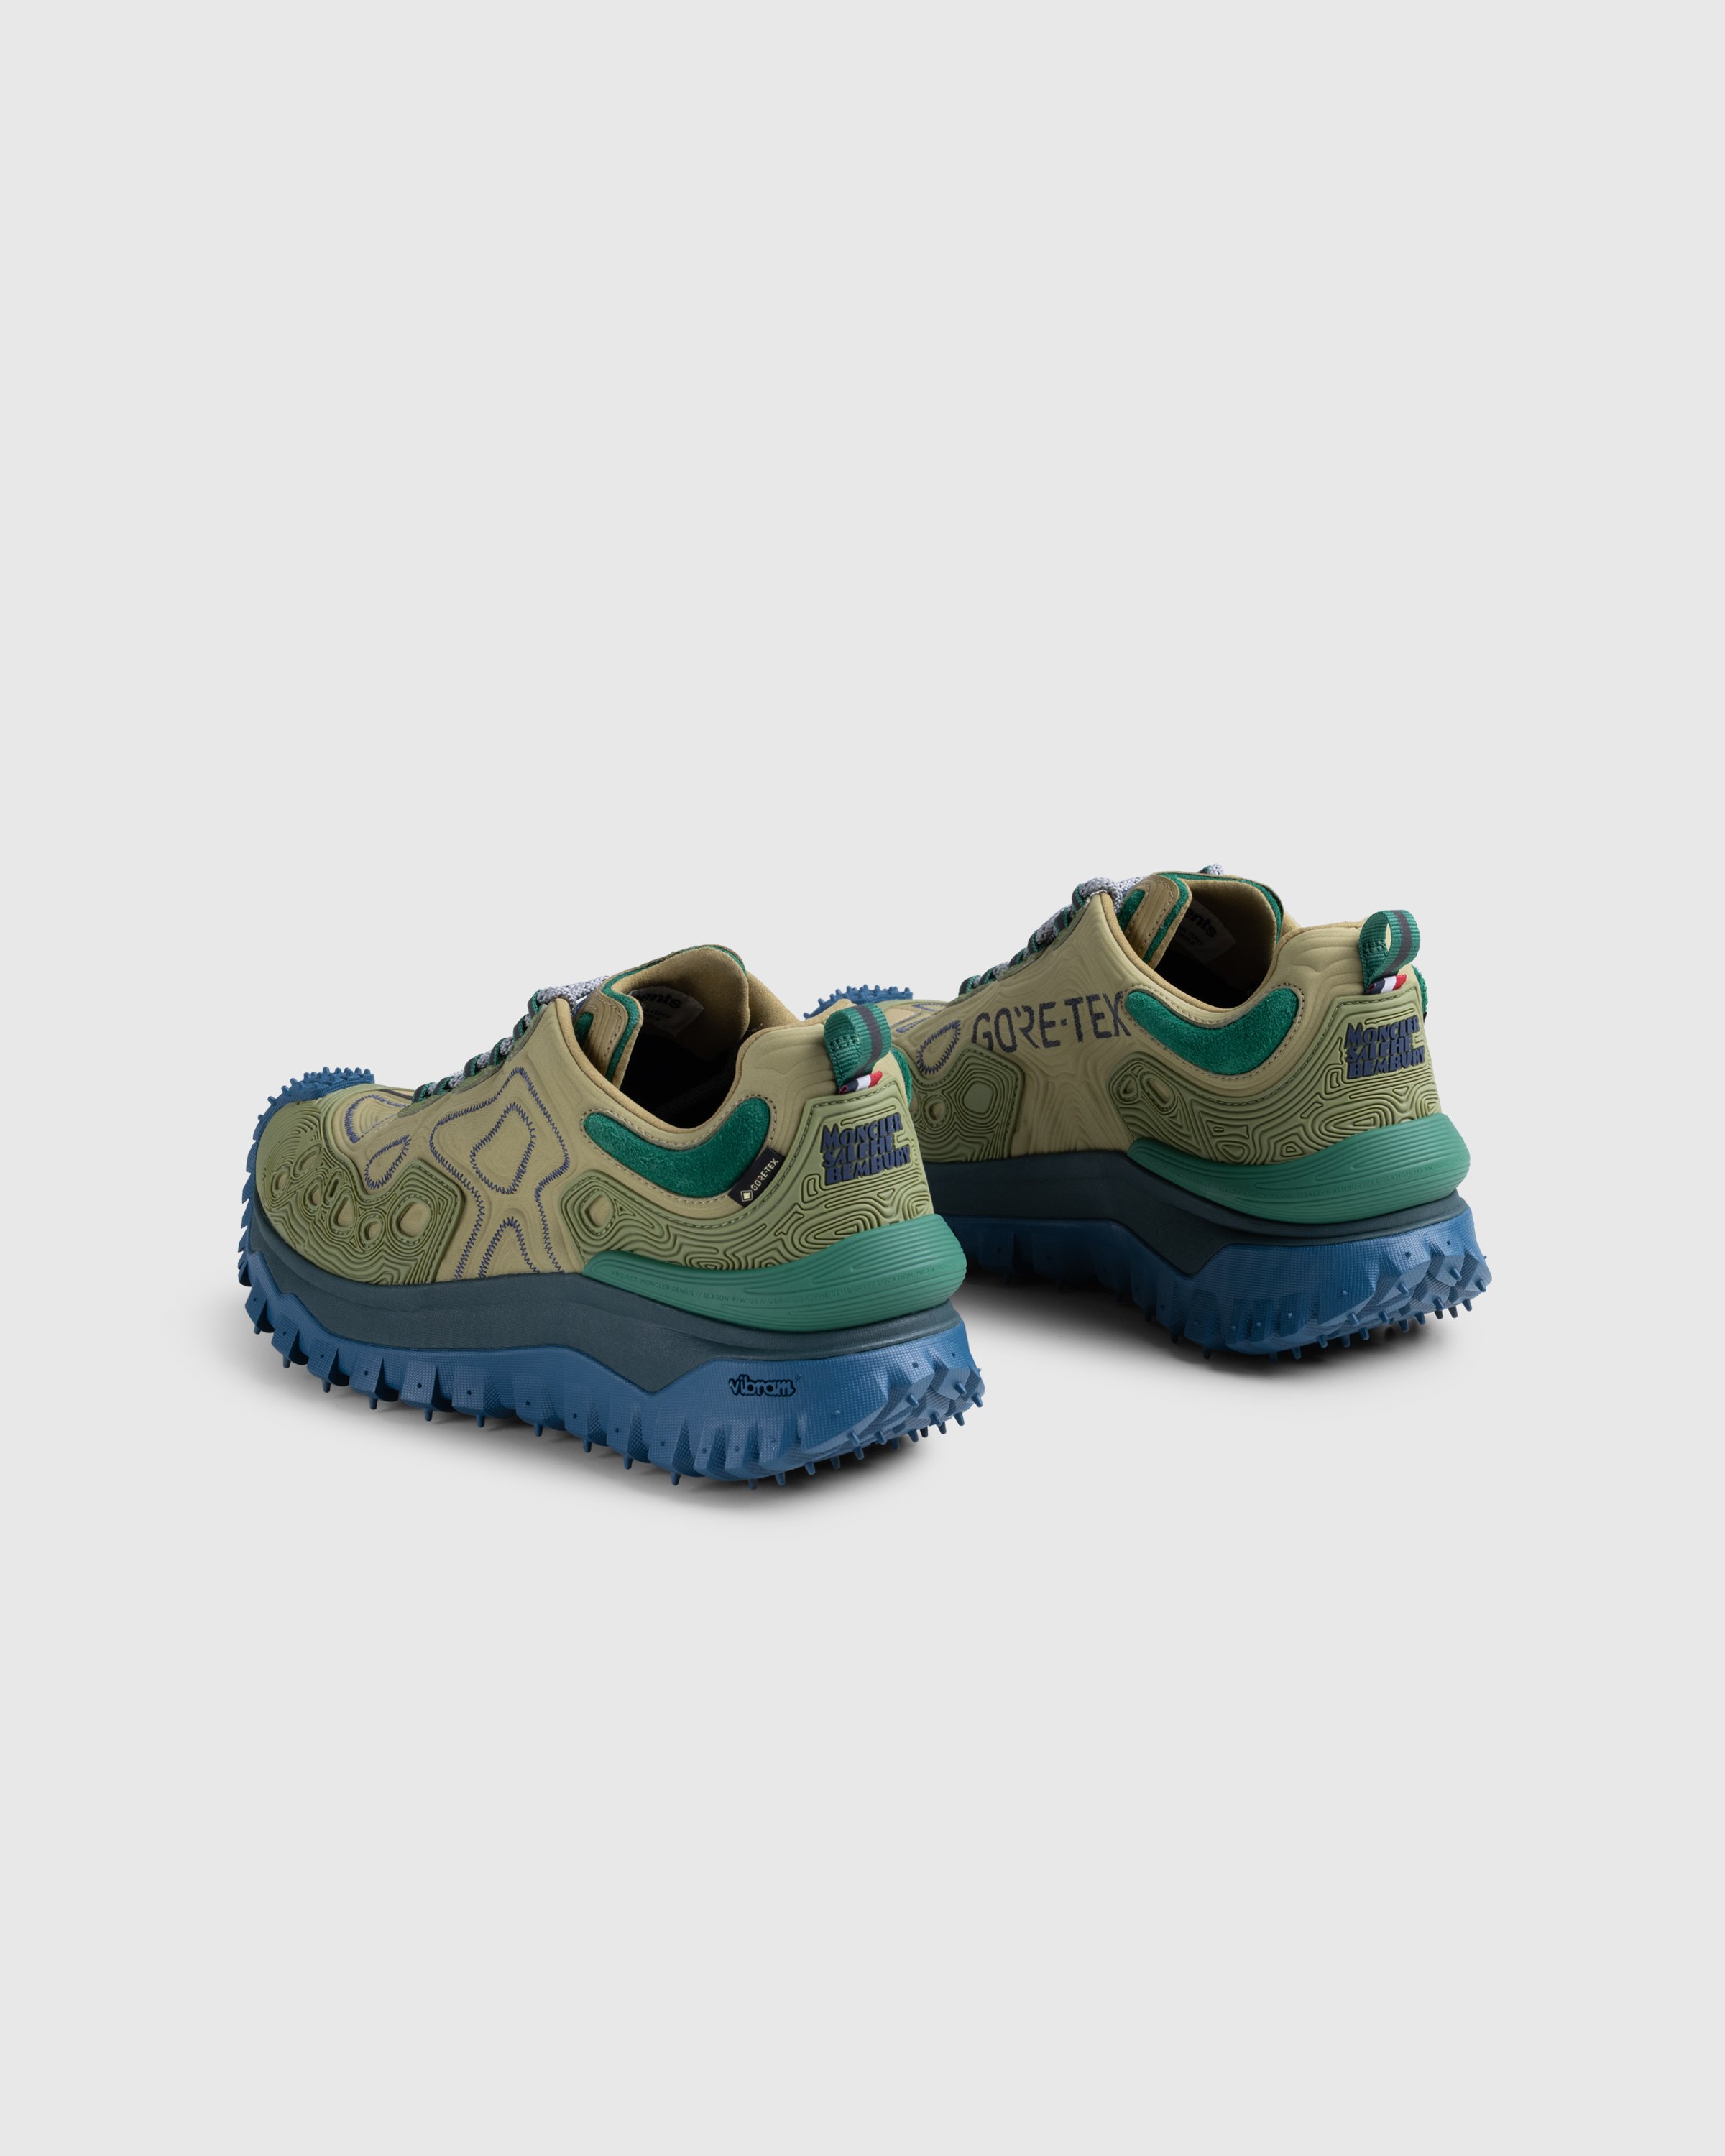 Moncler x Salehe Bembury - Trailgrip Grain Sneakers Beige - Footwear - Beige - Image 4